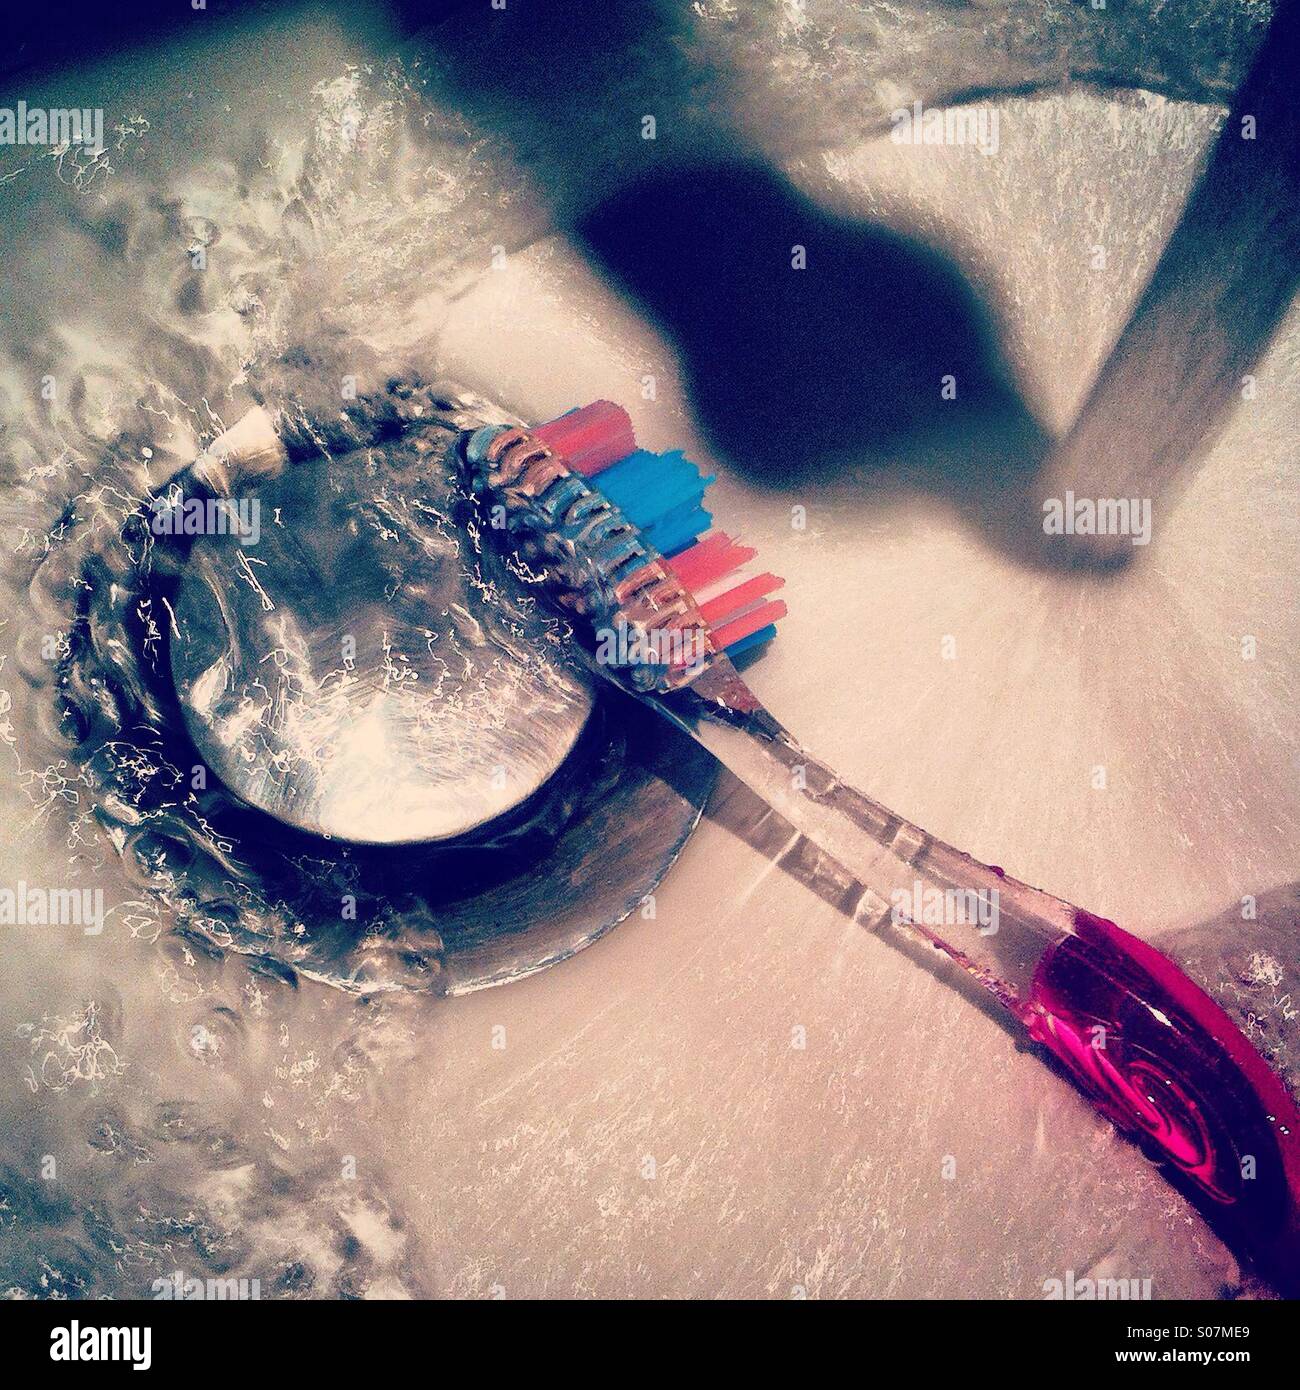 Limpiar el cepillo de dientes en el fregadero. Foto de stock